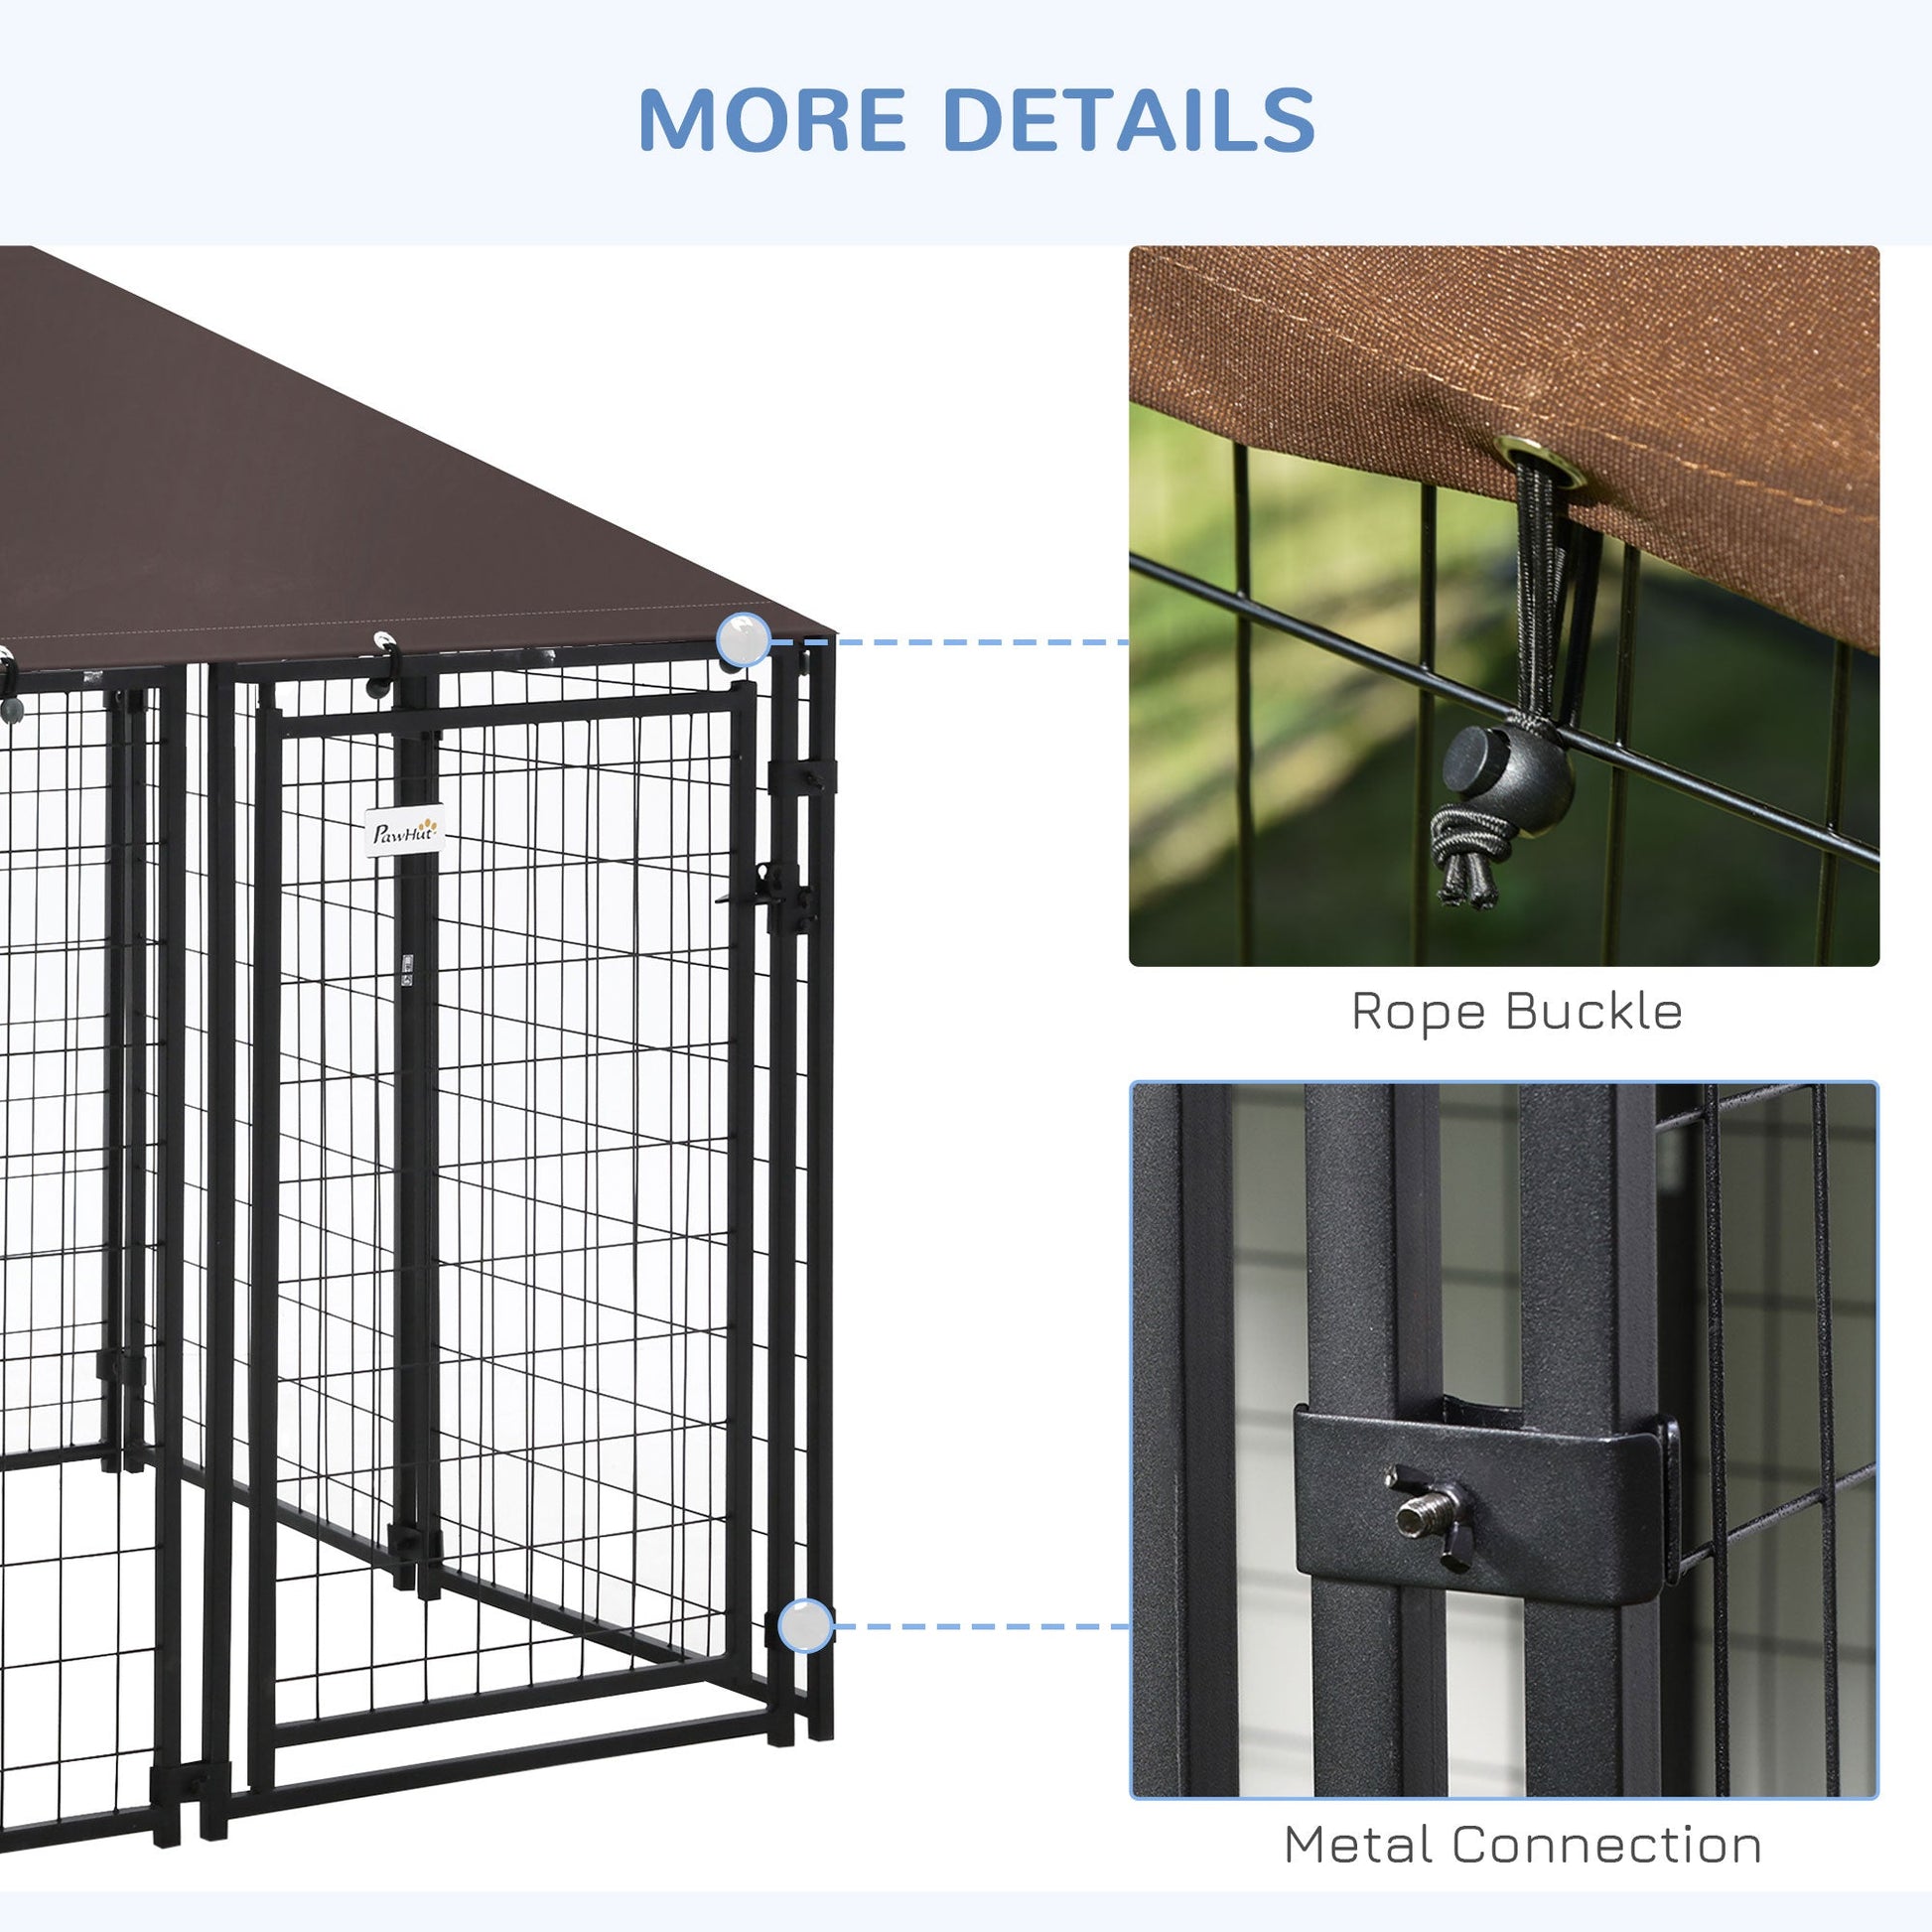 Outdoor Dog Kennel, Welded Wire Steel Fence, Lockable Pet Playpen Crate, with Water-, UV-Resistant Canopy Top, Door, 4.6ft x 4.6ft x 5ft, Black - Gallery Canada